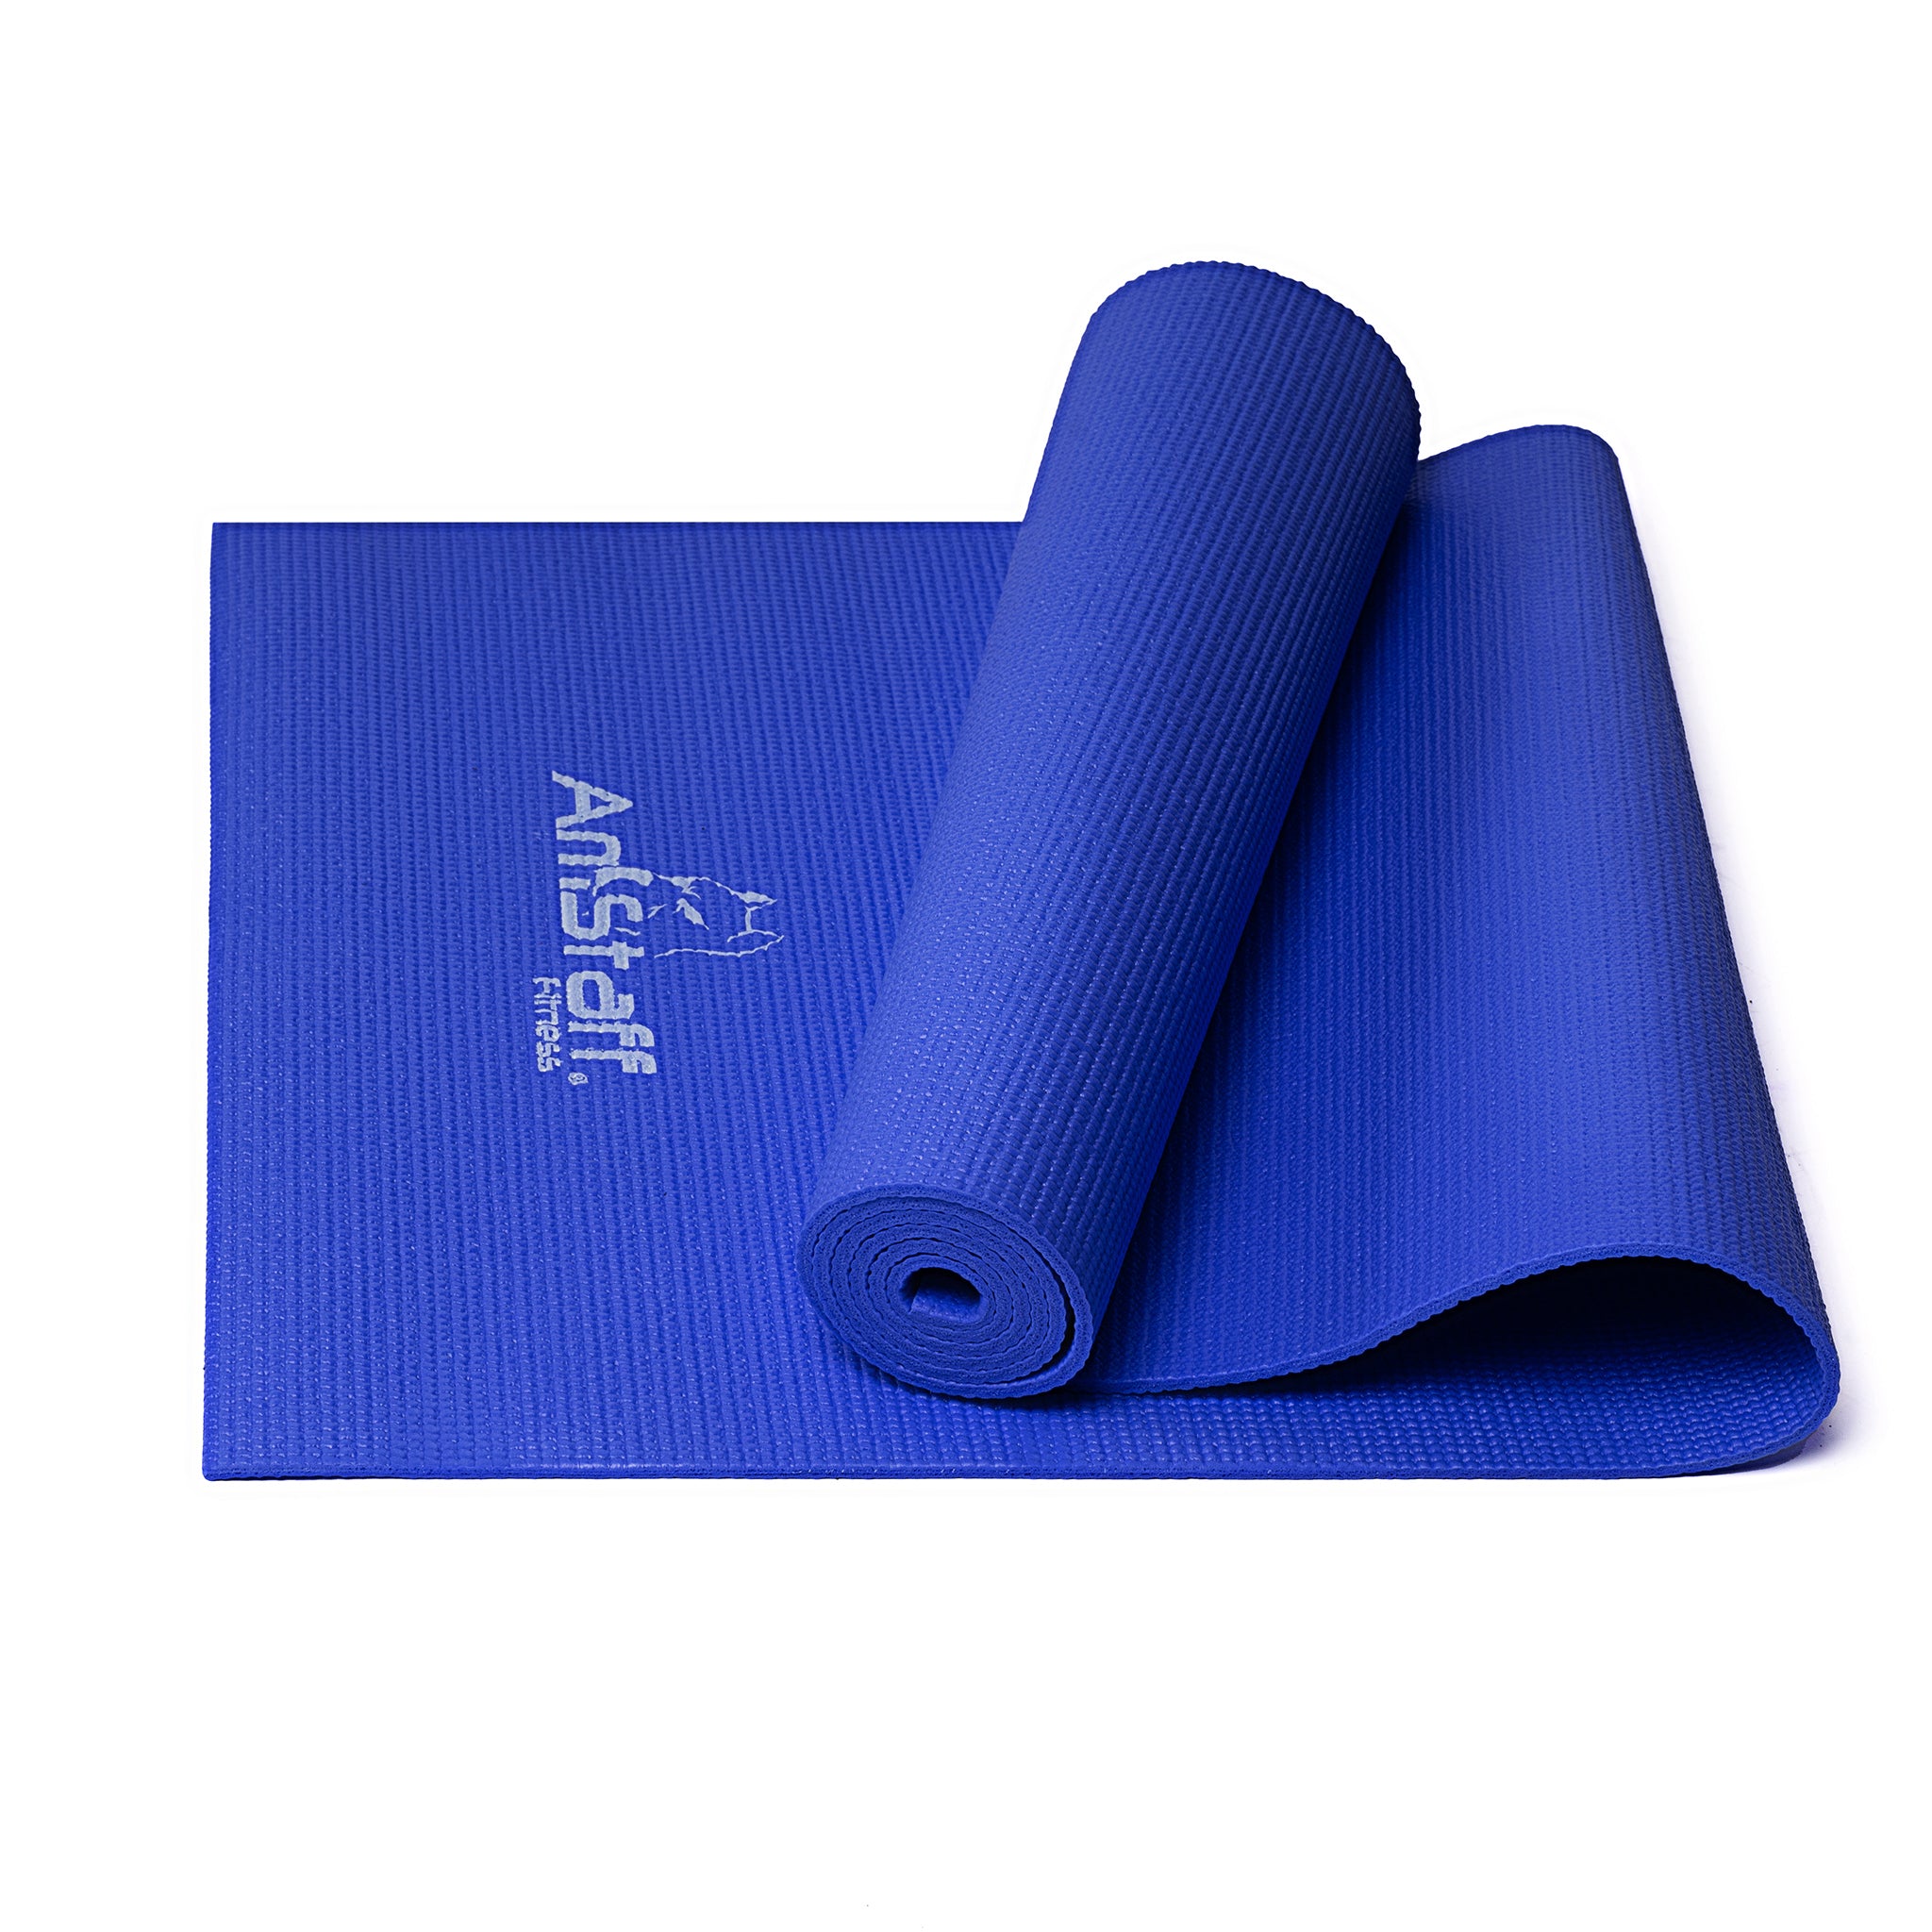 Yoga Mats Tapis Yoga Pilates Mat Workout Pats 6mm Thick EVA Foam